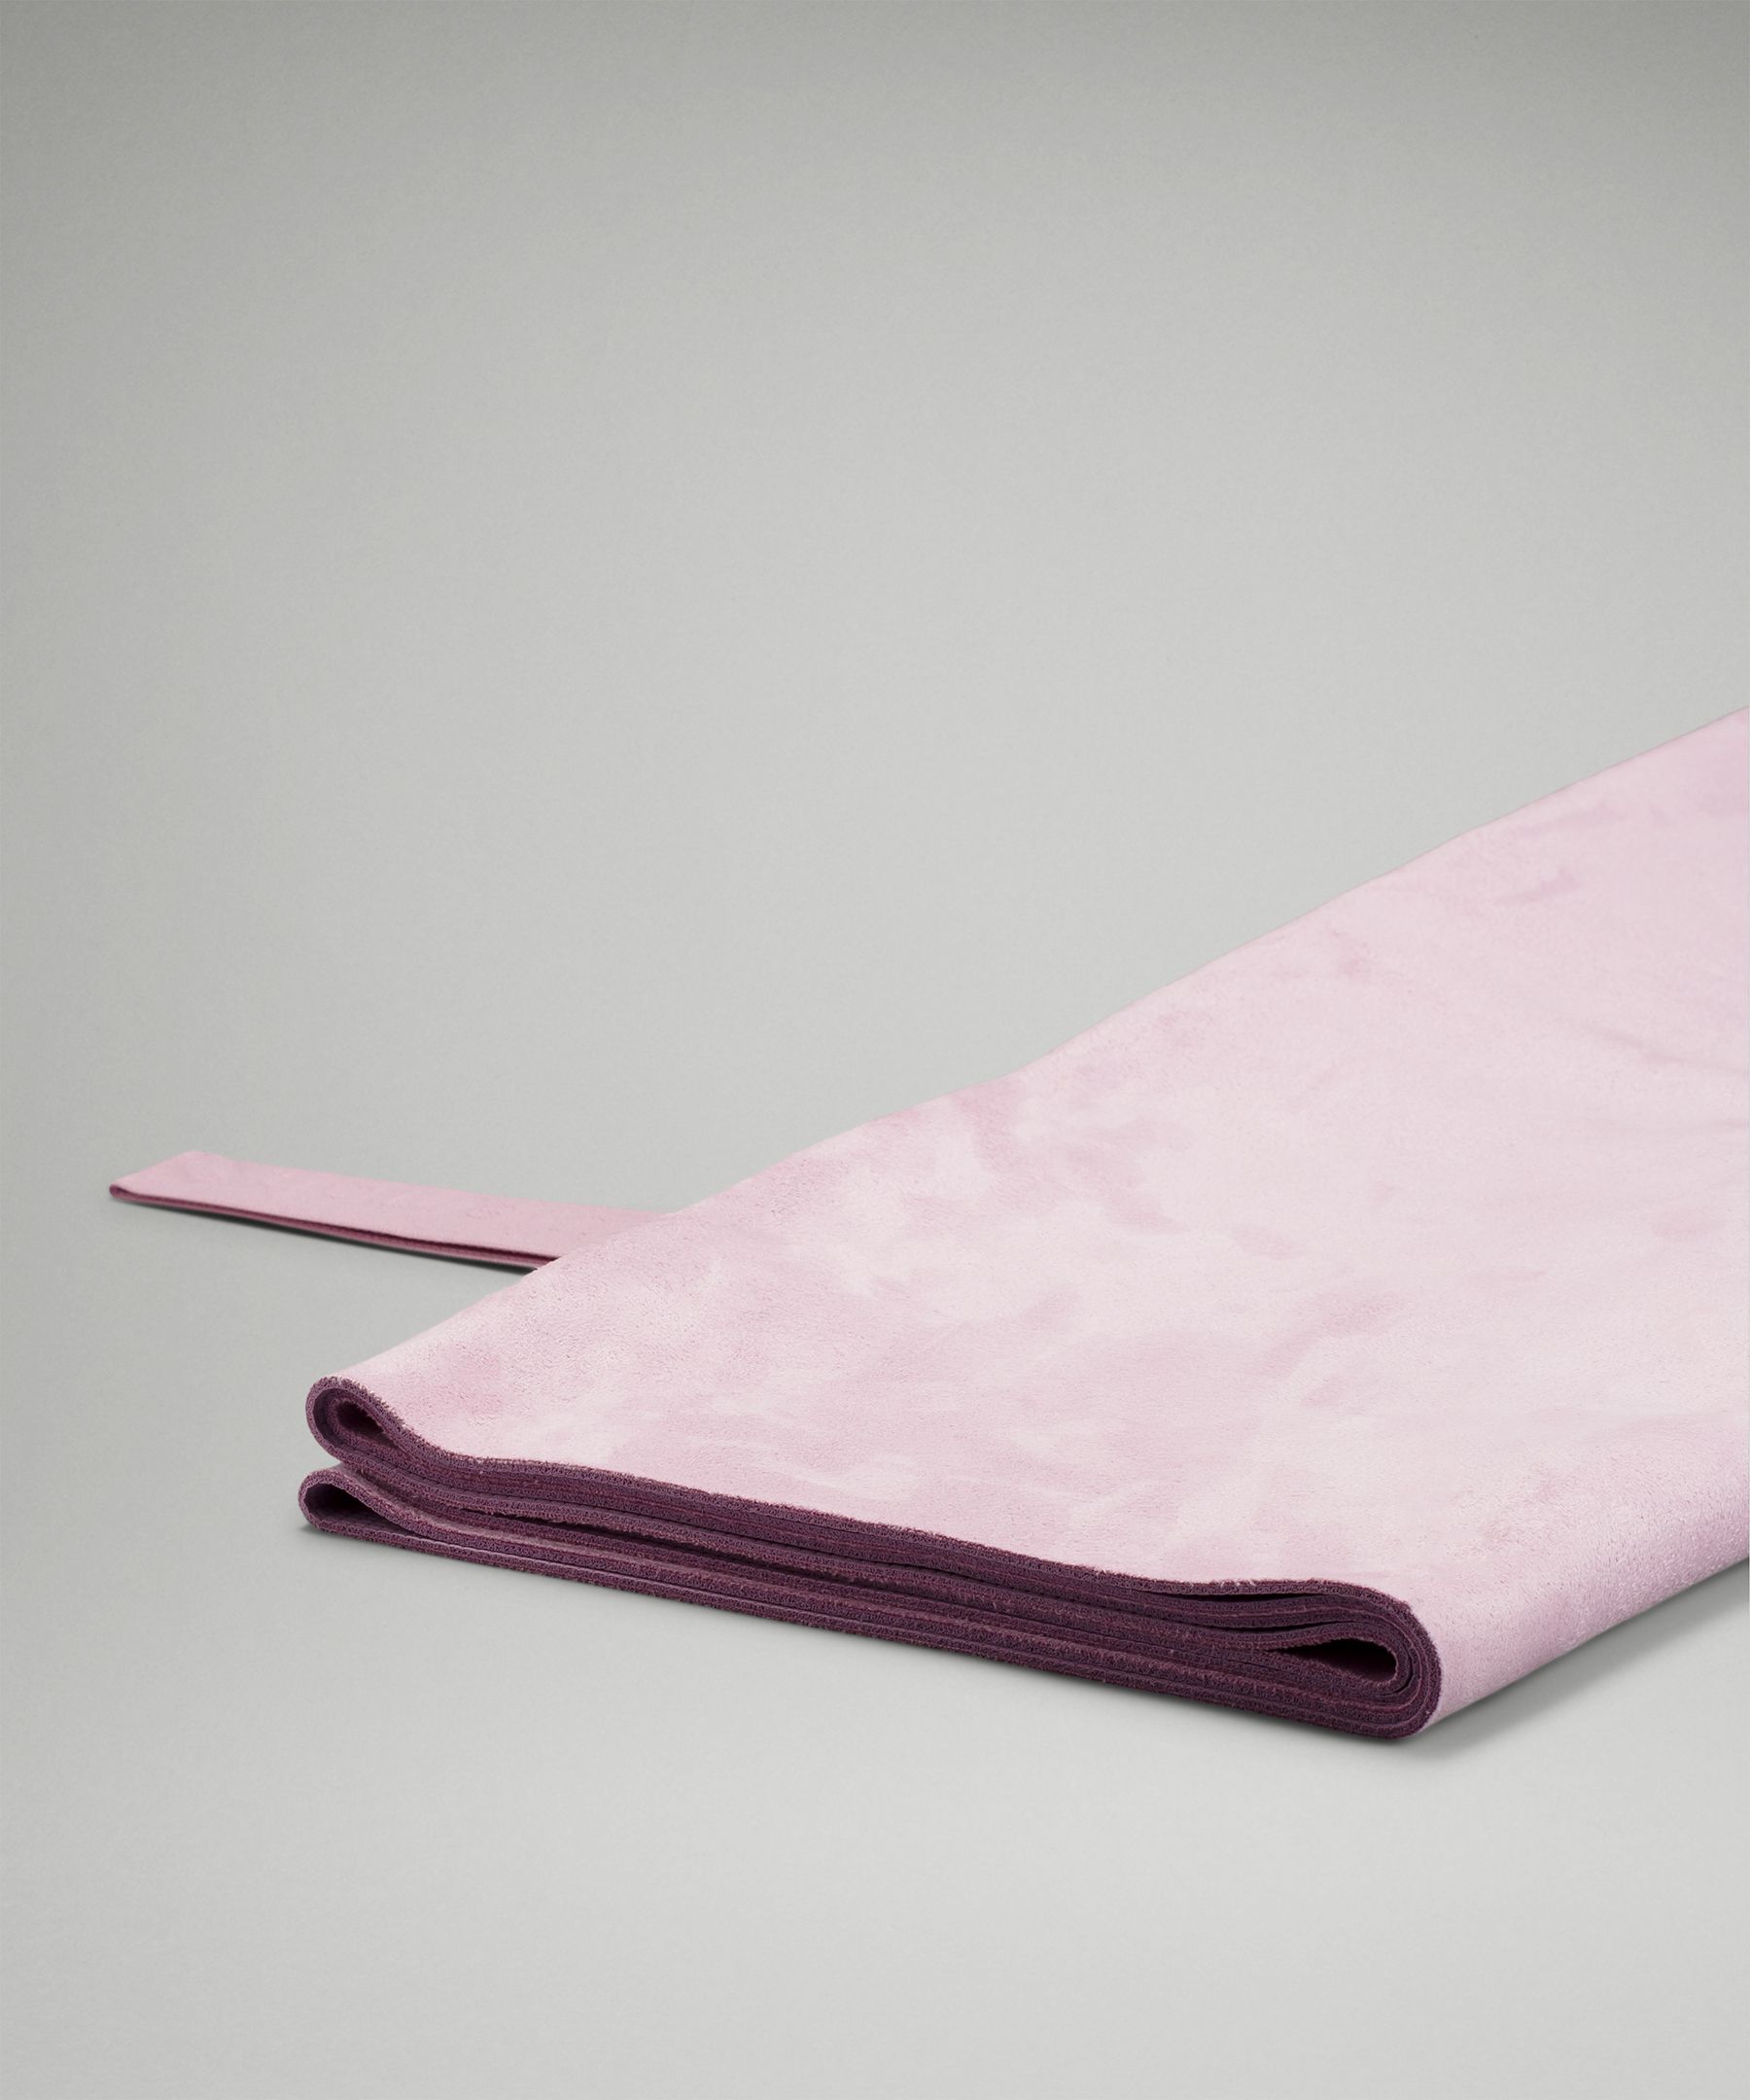 Jual Preloved Matras Yoga Lululemon Carry onwards Mat - Purple Foldable -  Jakarta Selatan - Impulsive_mama